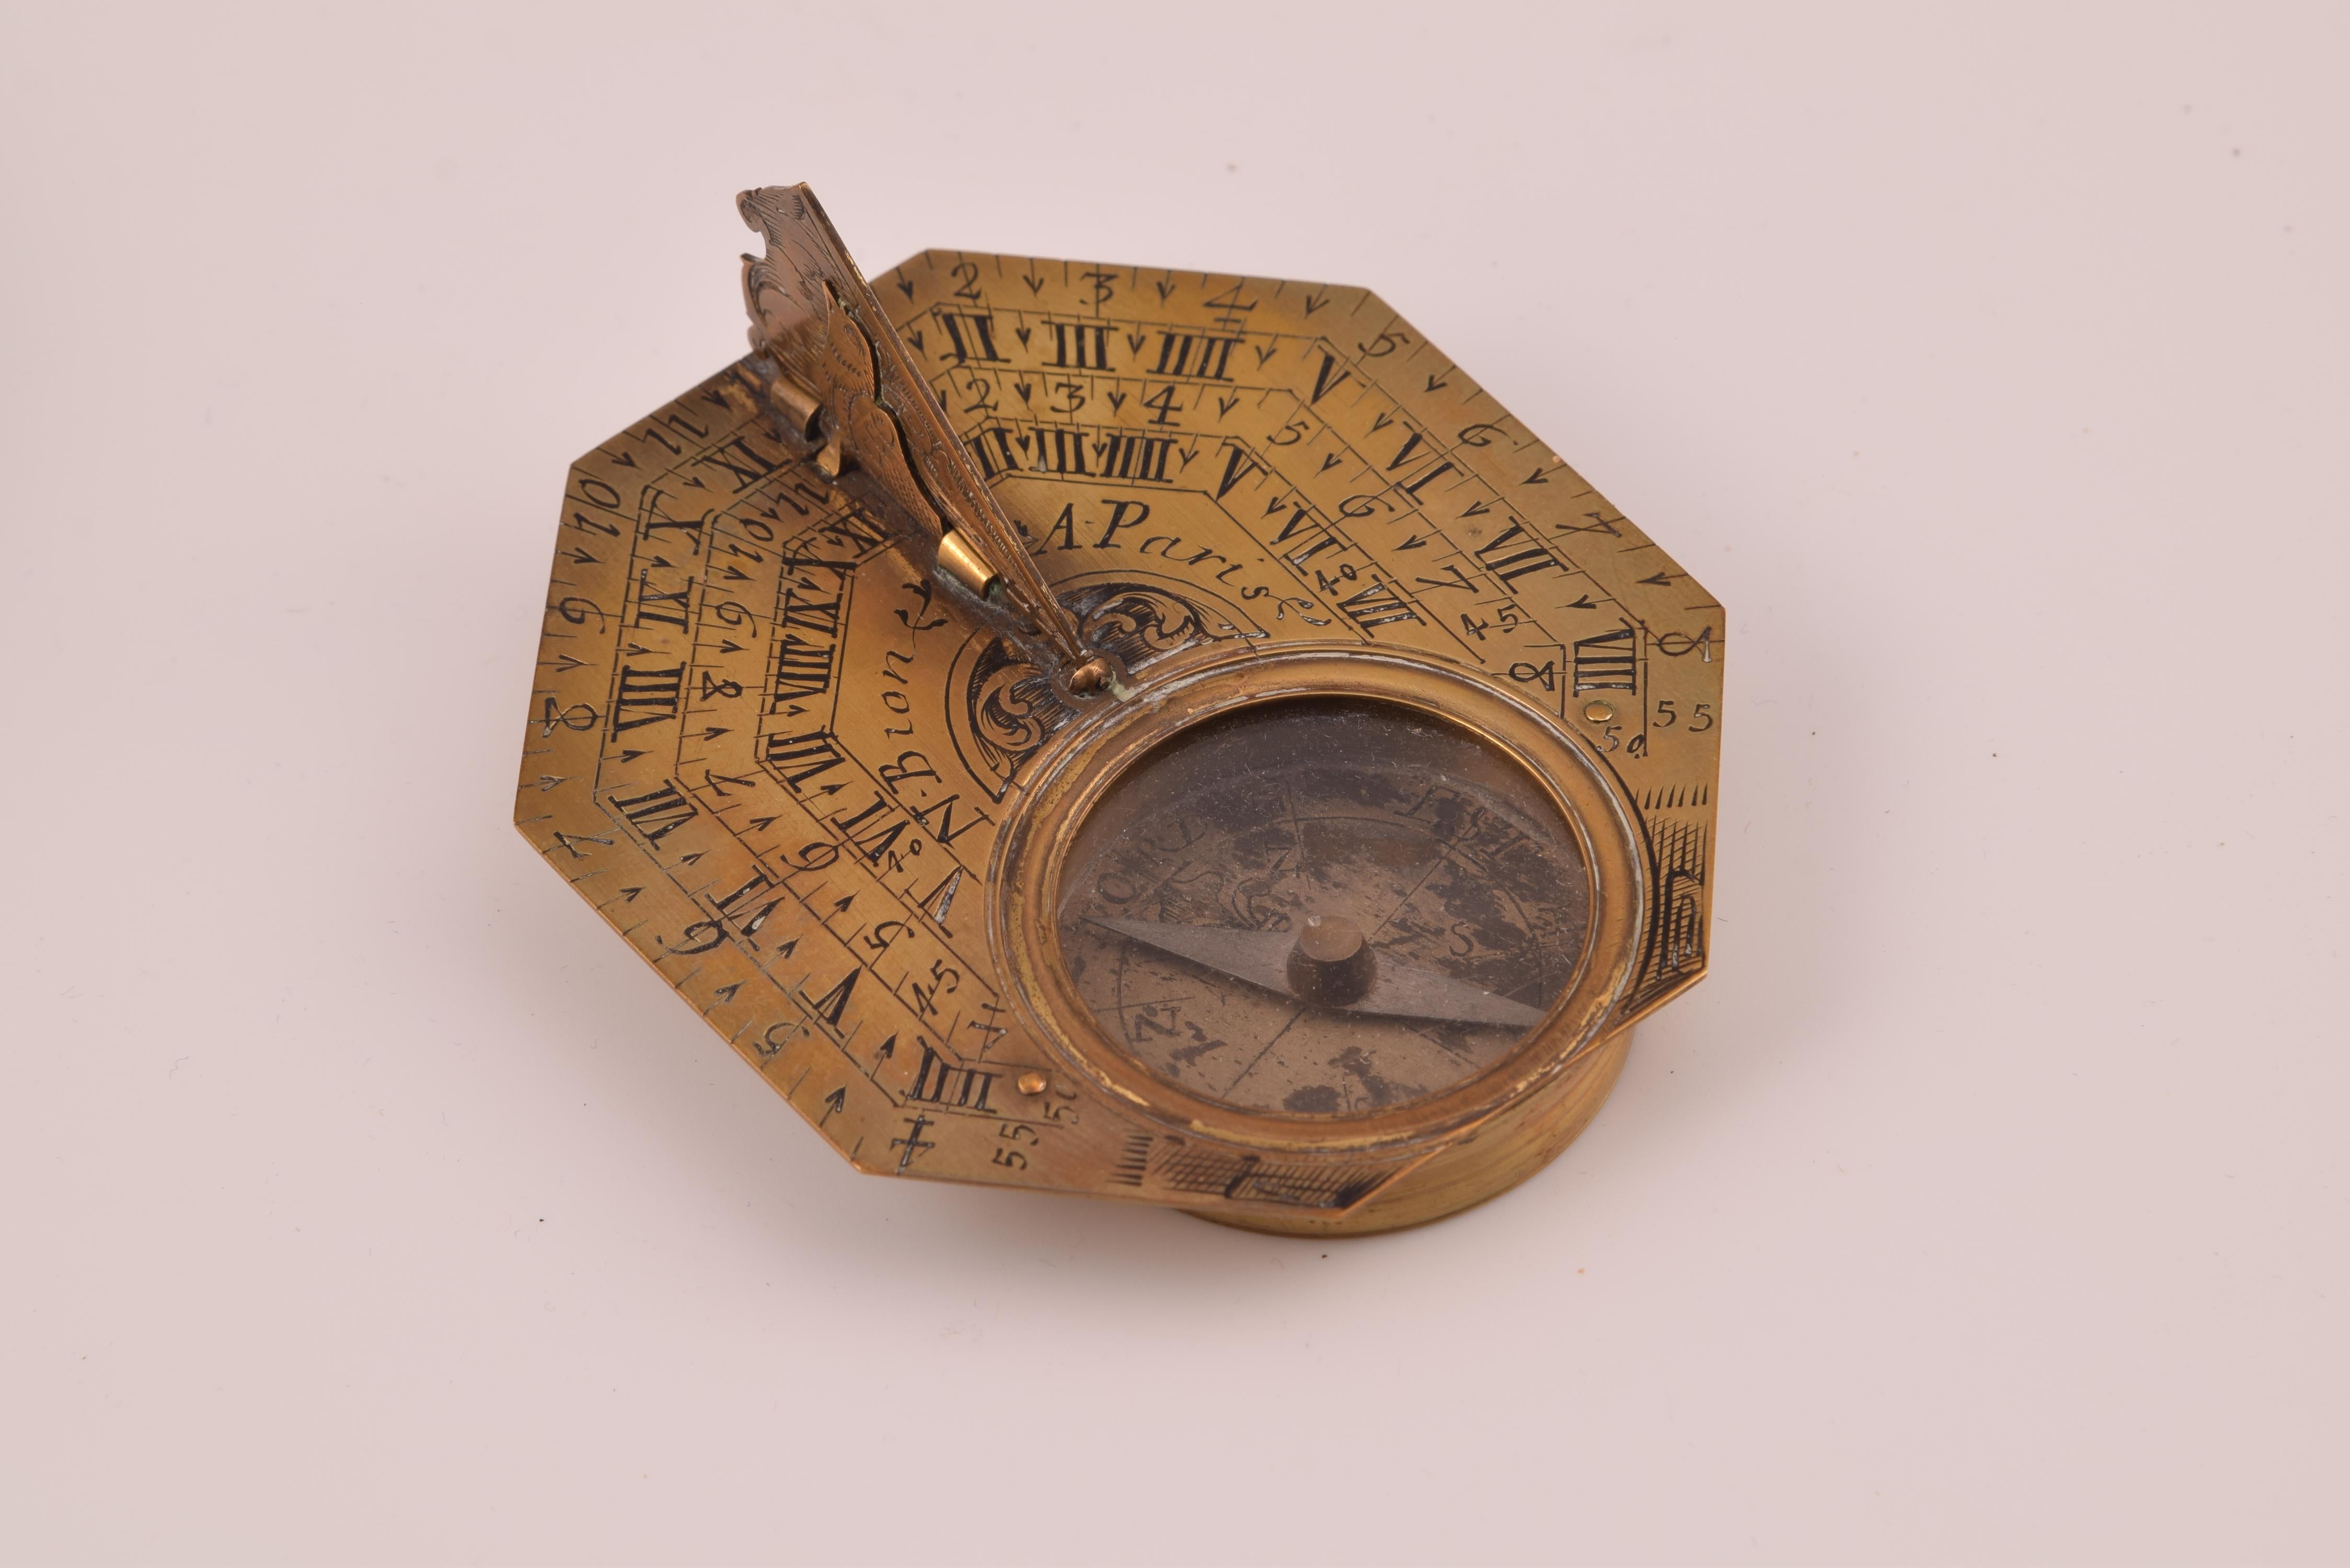 Sonnenuhr mit Kompass und Etui. Bronze. BION, Nikolaus. Paris, 18. Jahrhundert. 
Polygonale Sonnenuhr mit einem vogelförmigen Gnomon und einem eingravierten dreieckigen Stück, das auf einer Seite einen Kompass mit einer Nadel mit dreieckigen Enden